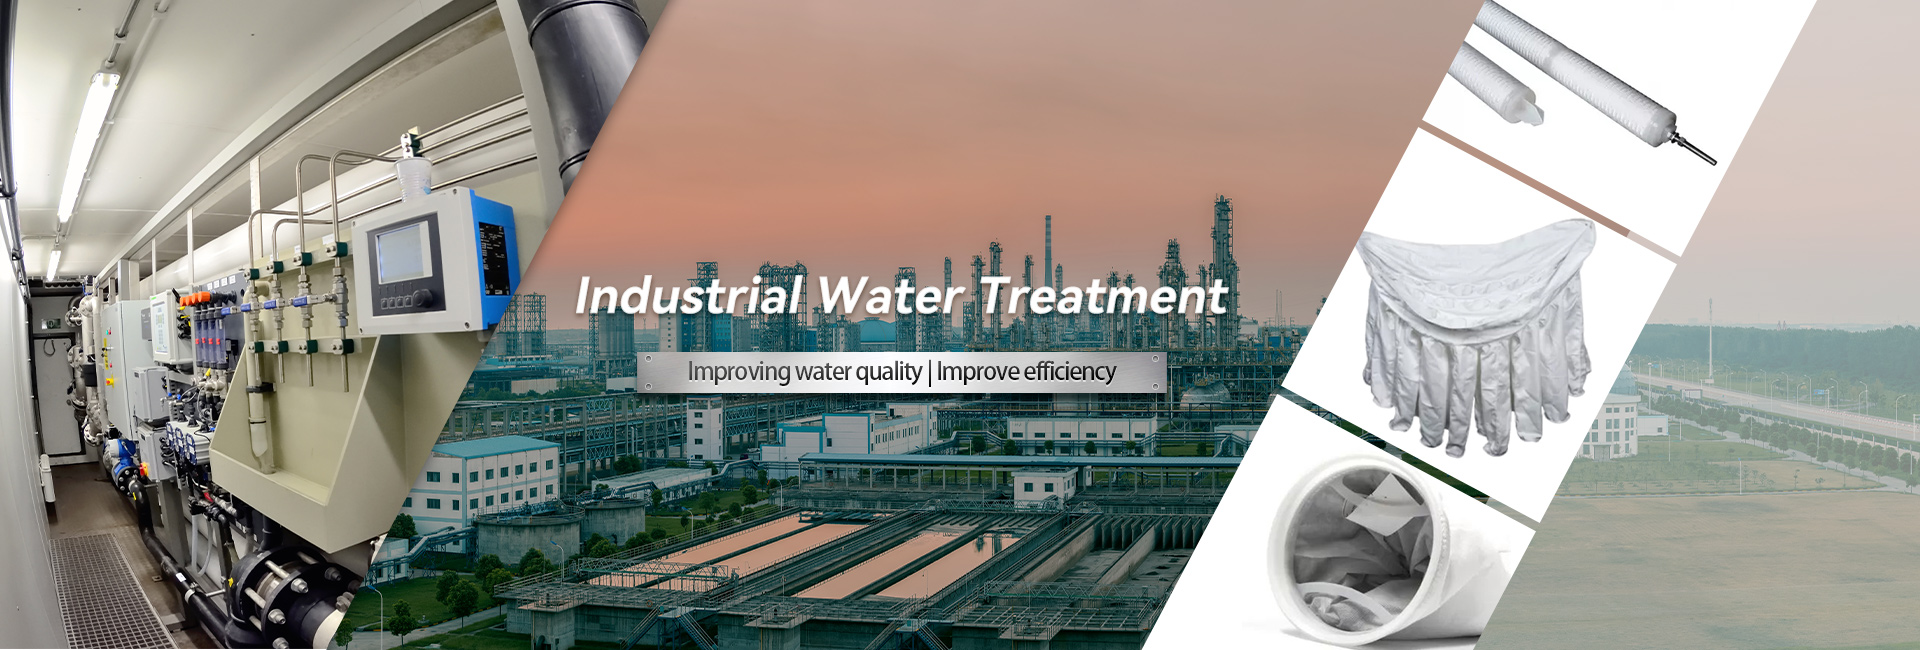 معالجة المياه الصناعية عالية الجودة